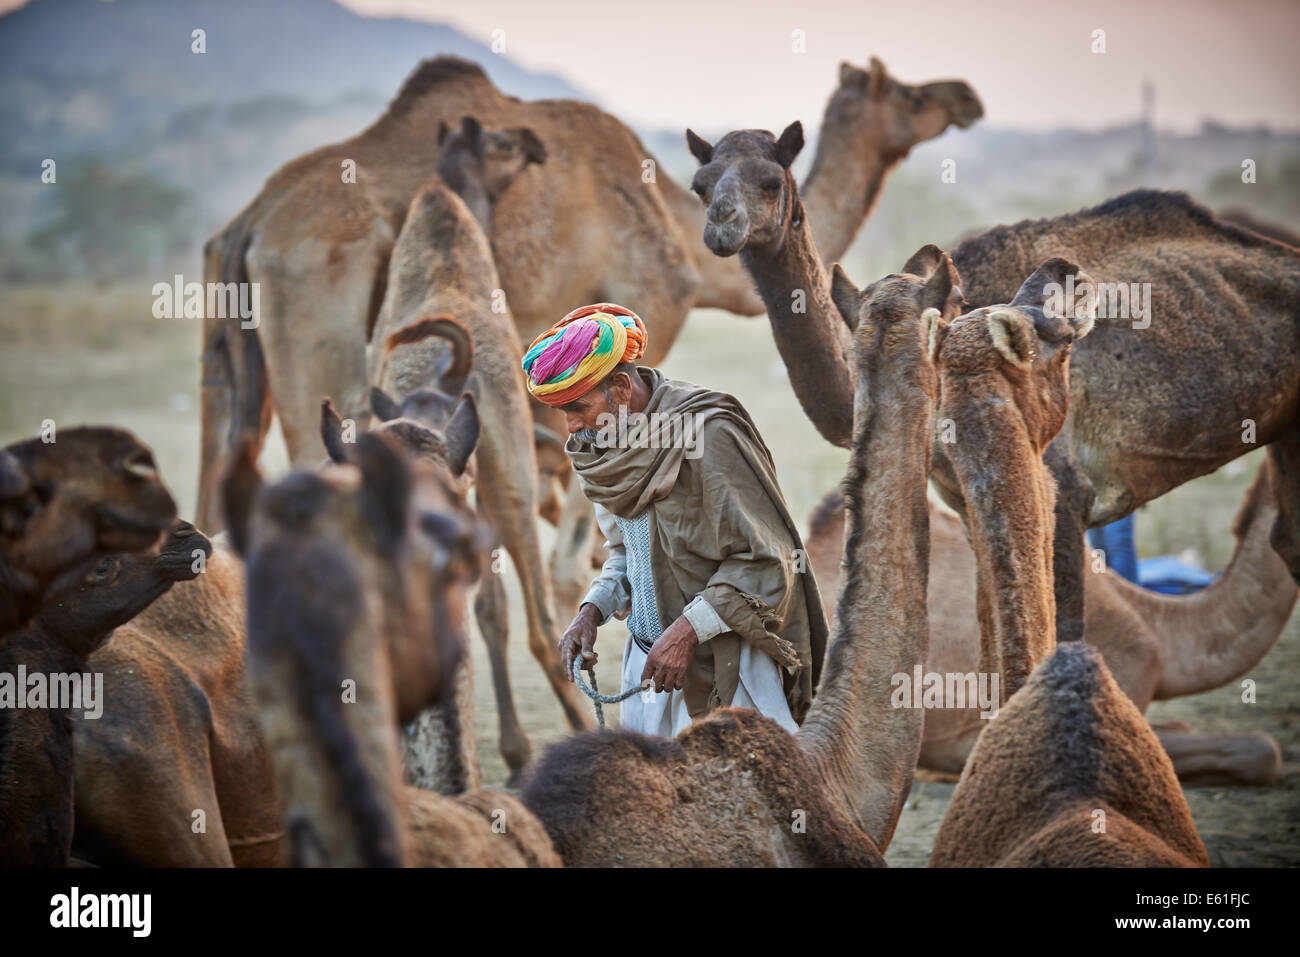 Tribu nomade avec l'homme en turban traditionnel entre ses chameaux sur camel et de l'élevage, foire Pushkar Mela, Rajasthan, Inde Banque D'Images